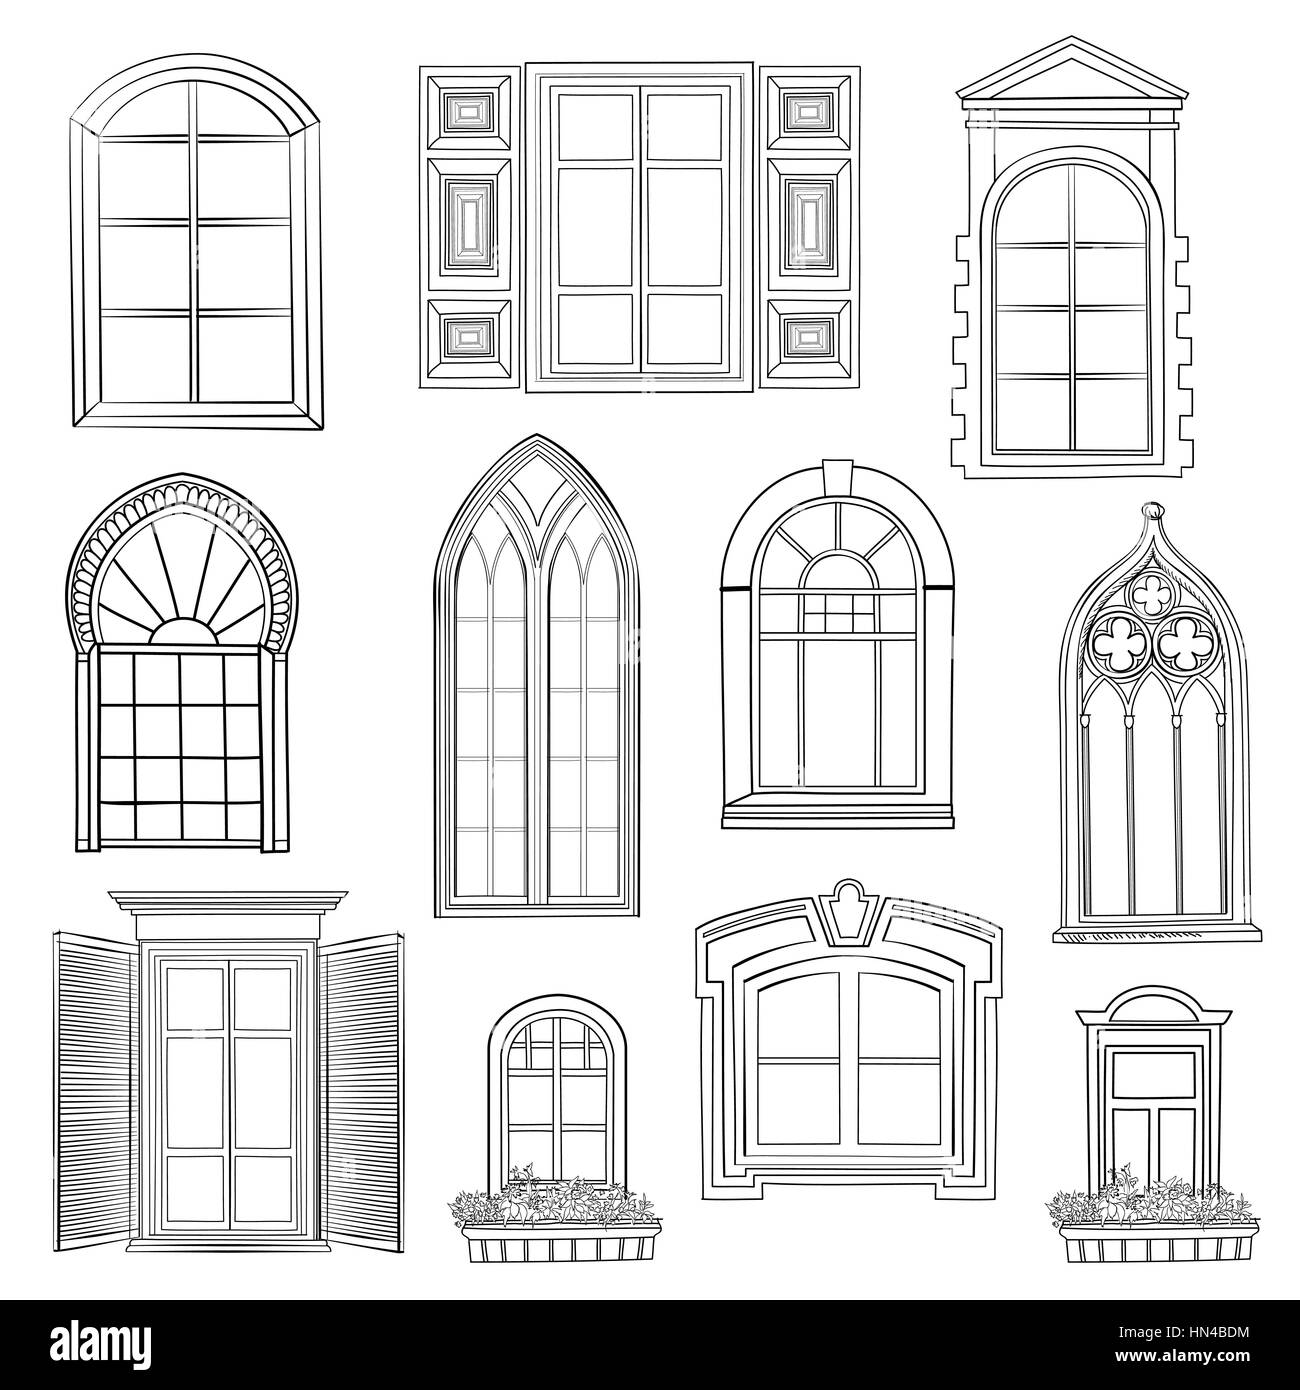 Finestra set. diverso stile architettonico di windows doodle schizzo elegante collection Illustrazione Vettoriale